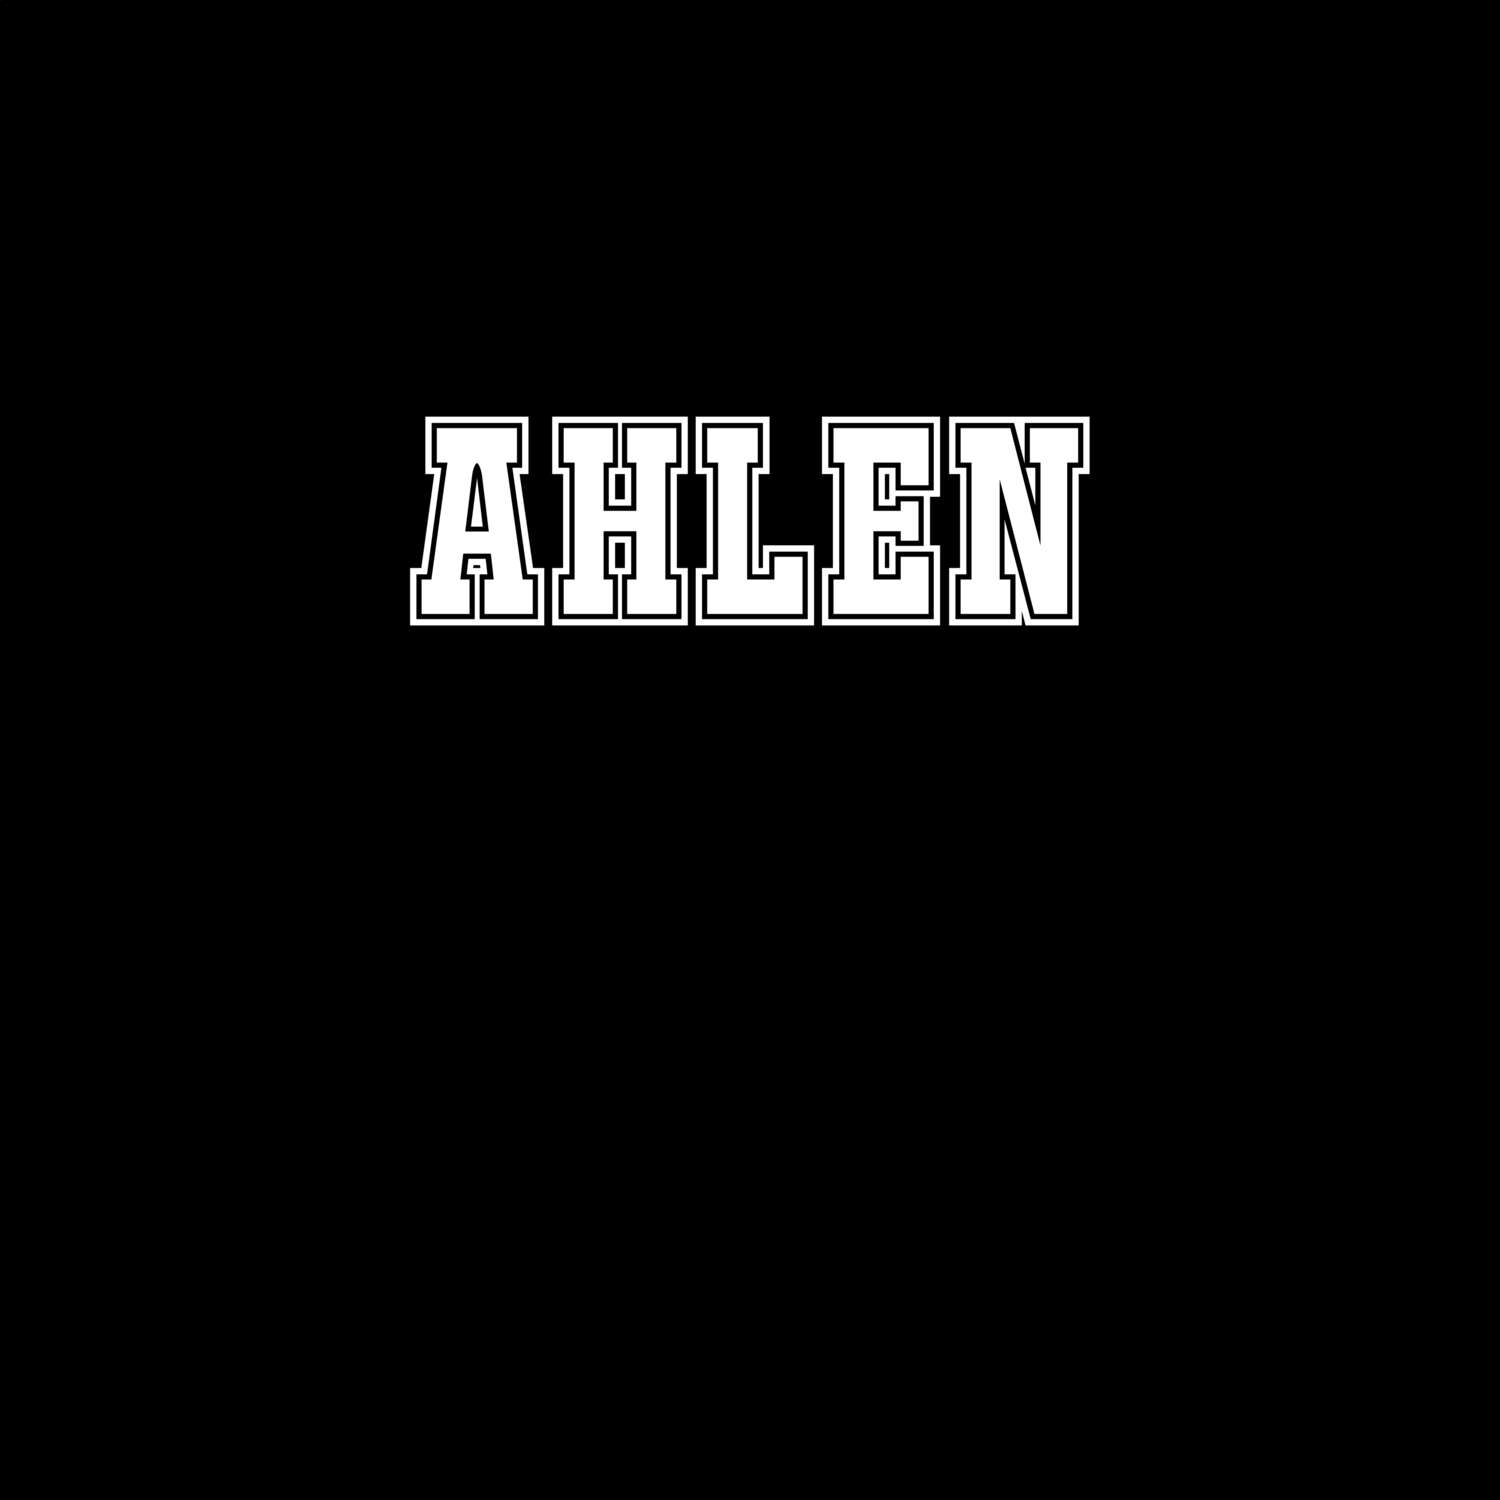 Ahlen T-Shirt »Classic«